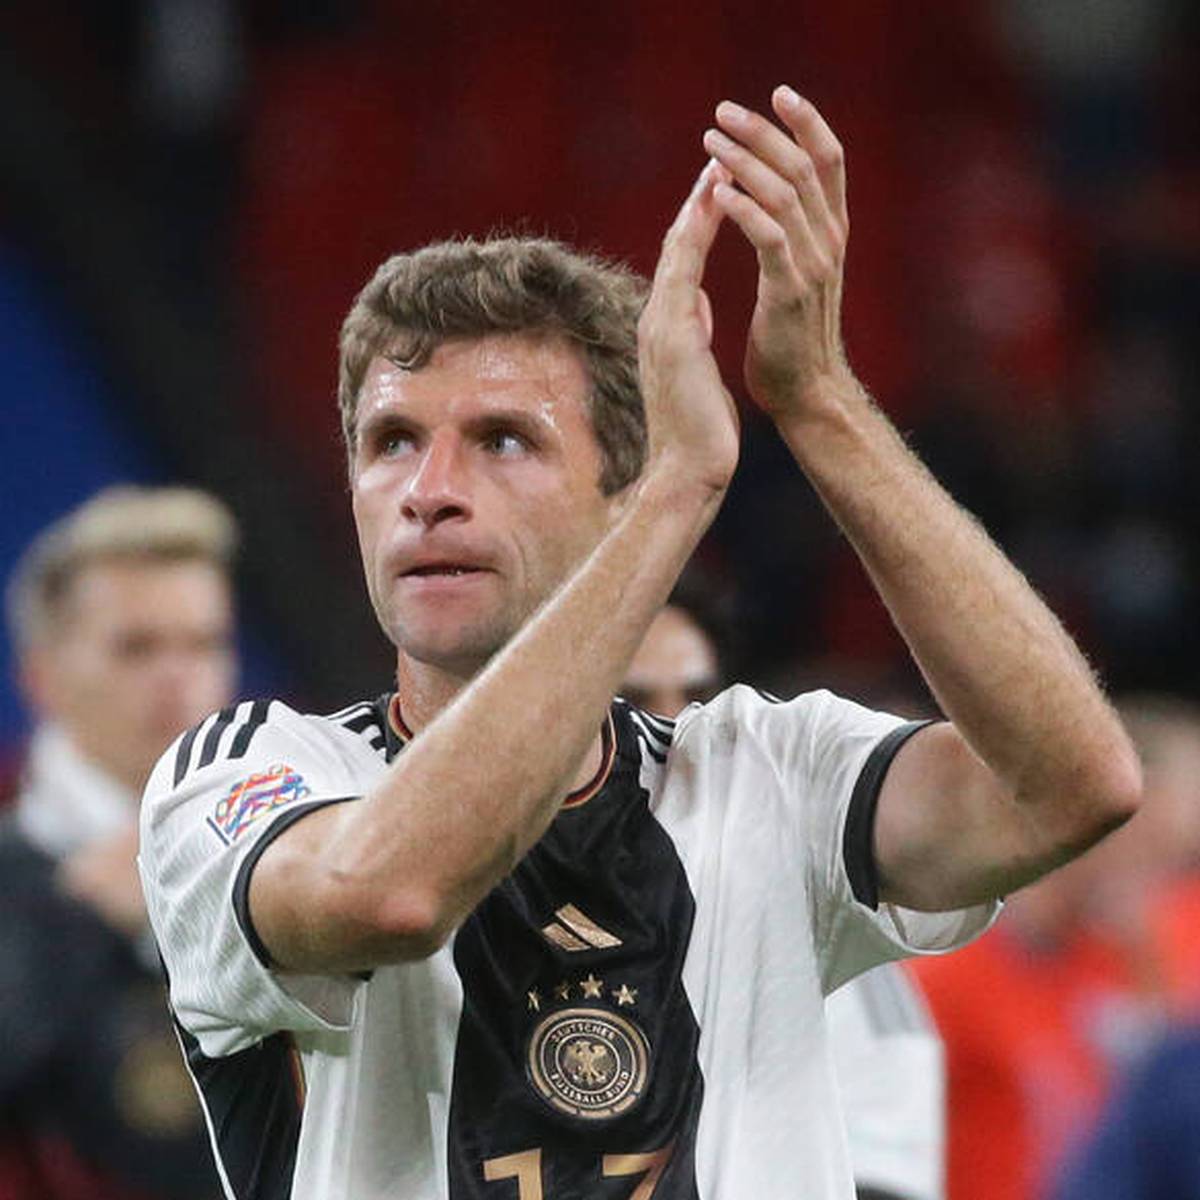 Deutschland verpasst gegen England in der Nations League trotz komfortabler Führung einen Sieg. Niklas Süle sieht aber vor allem positiven Dinge, auch Thomas Müller lässt Kritik kalt.